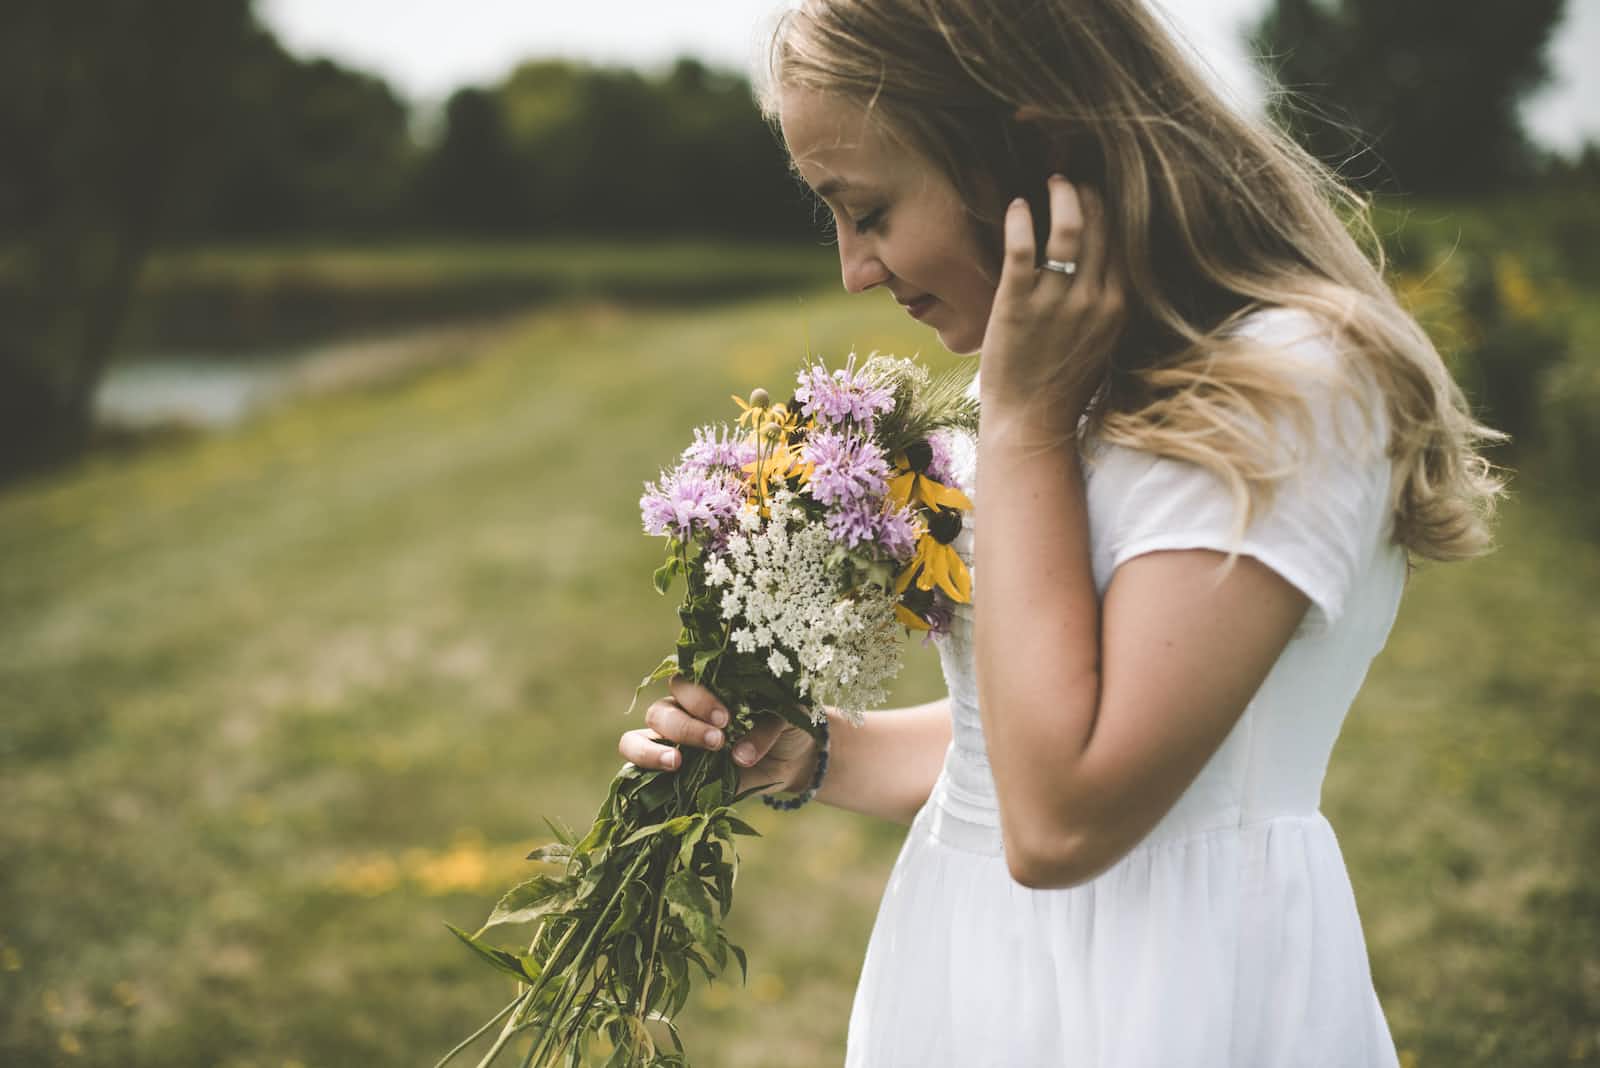 A woman in a white dress smelling flowers in an open field